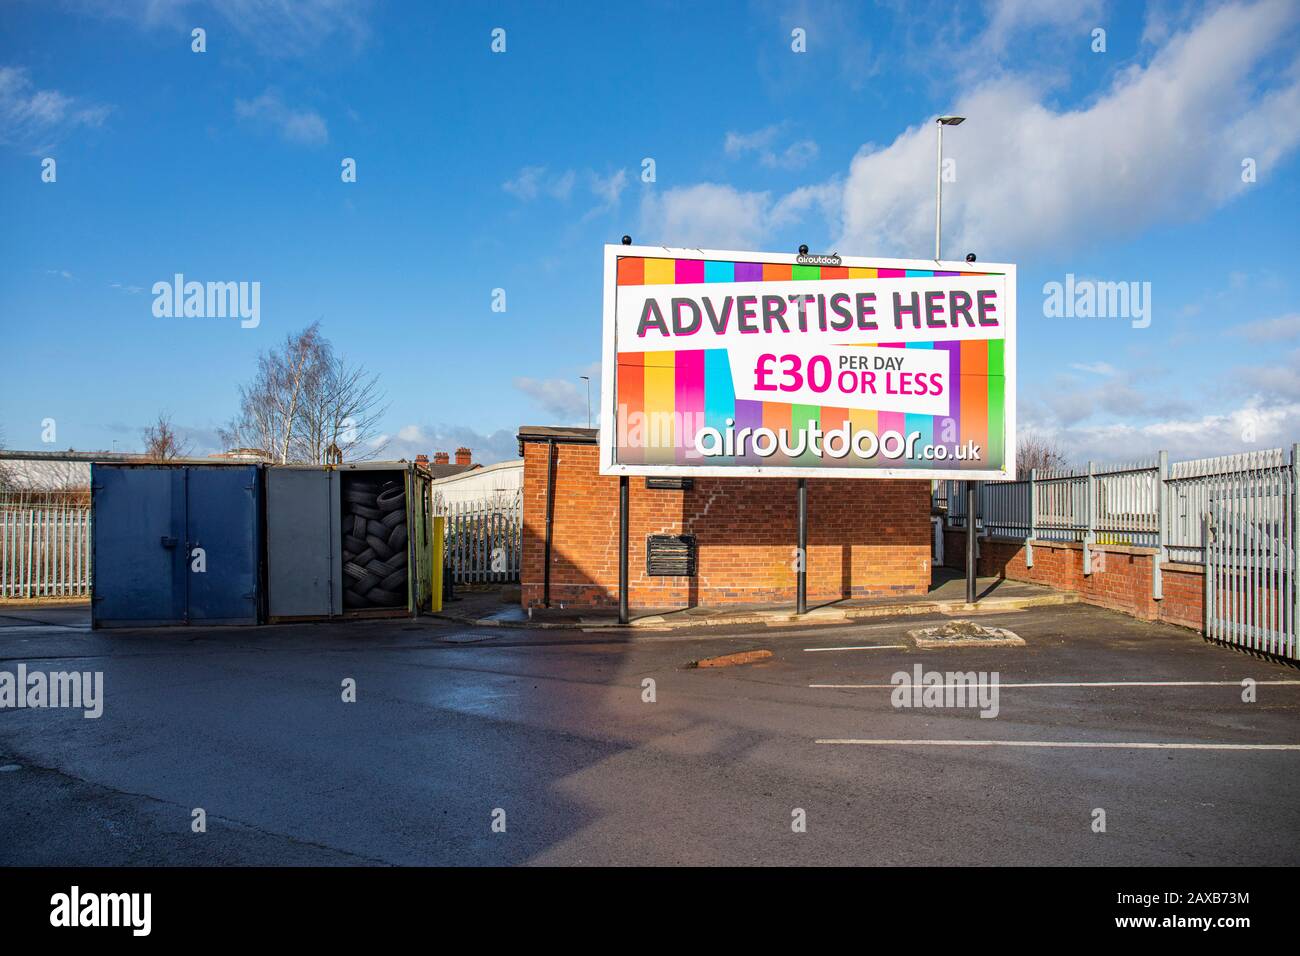 Panneau d'affichage Airoutdoor demandant de faire de la publicité ici pour 30 £ par jour ou moins Banque D'Images